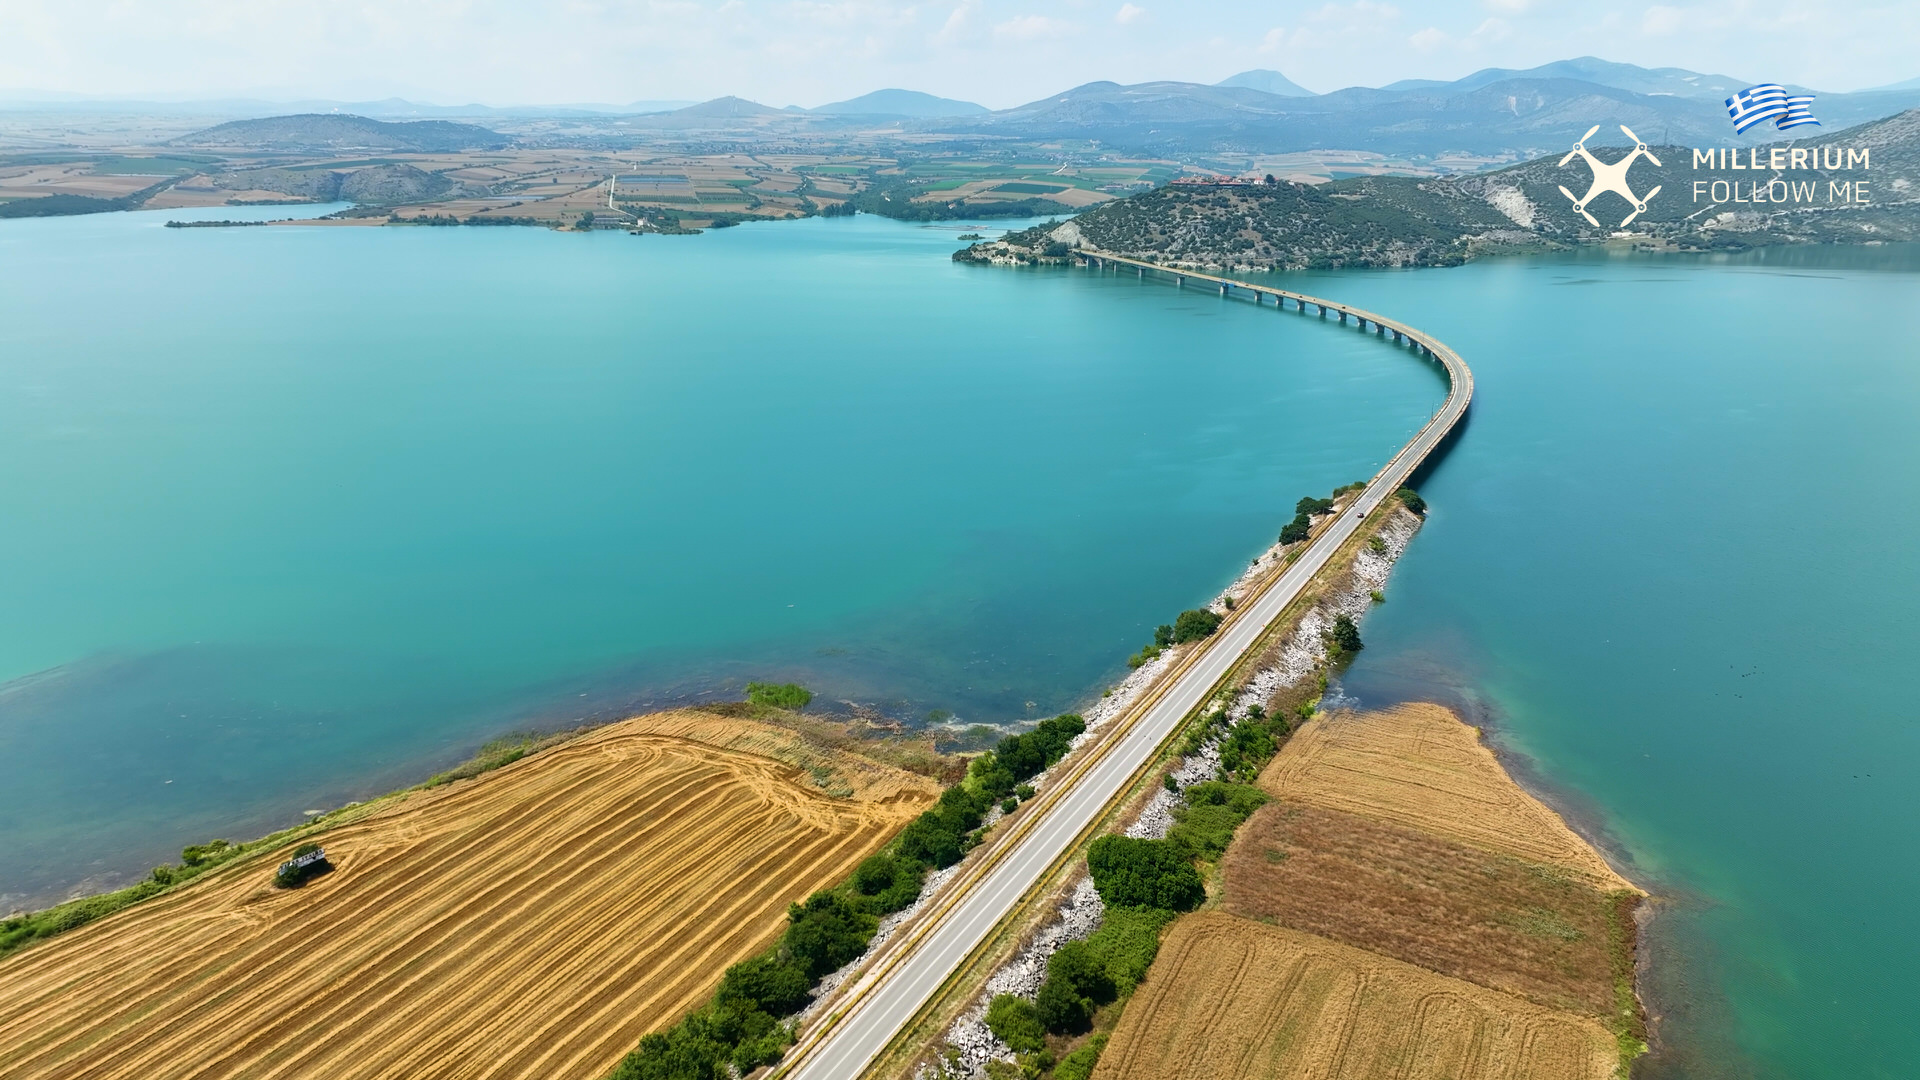 Νεράιδα: Το χωριό με τη μαγευτική θέα στην ομορφότερη γέφυρα της Ελλάδας